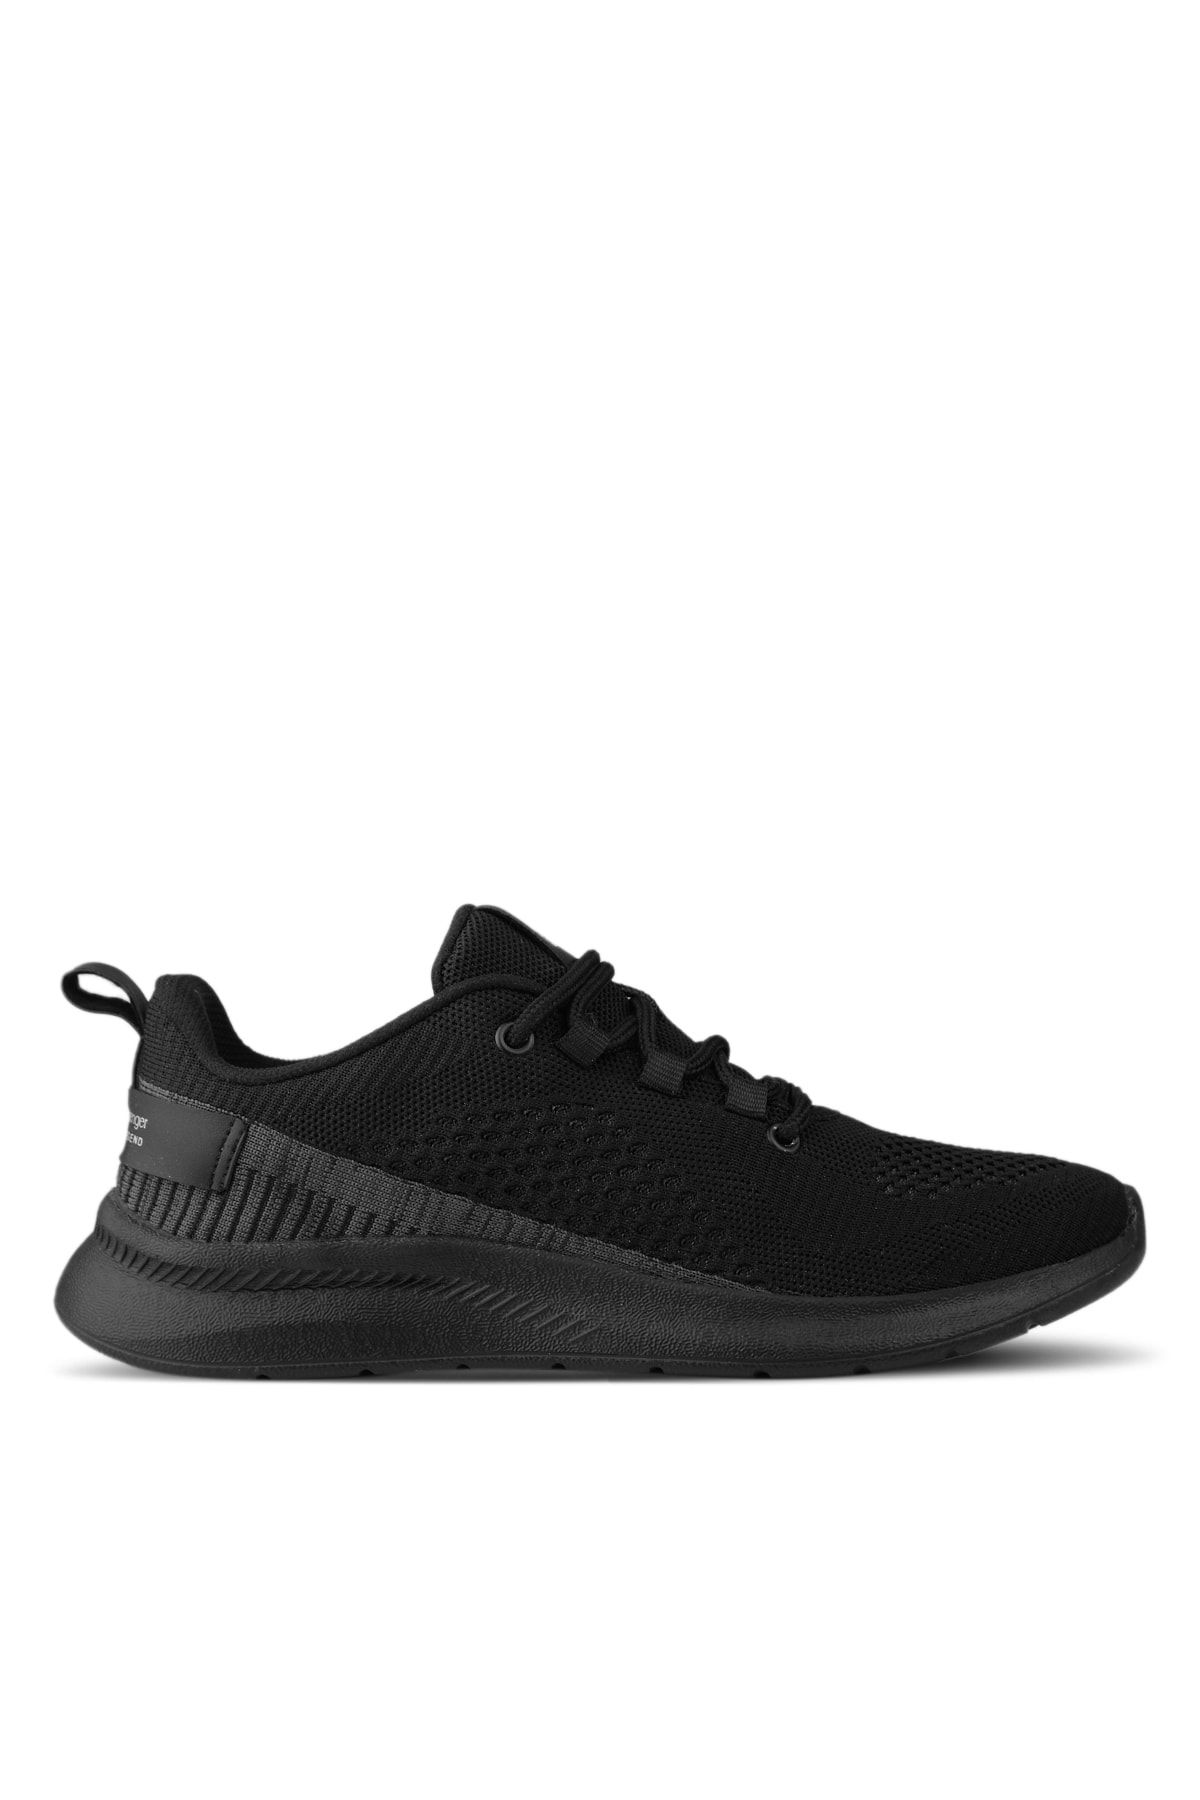 Slazenger Adelbert Sneaker Erkek Ayakkabı Siyah / Siyah